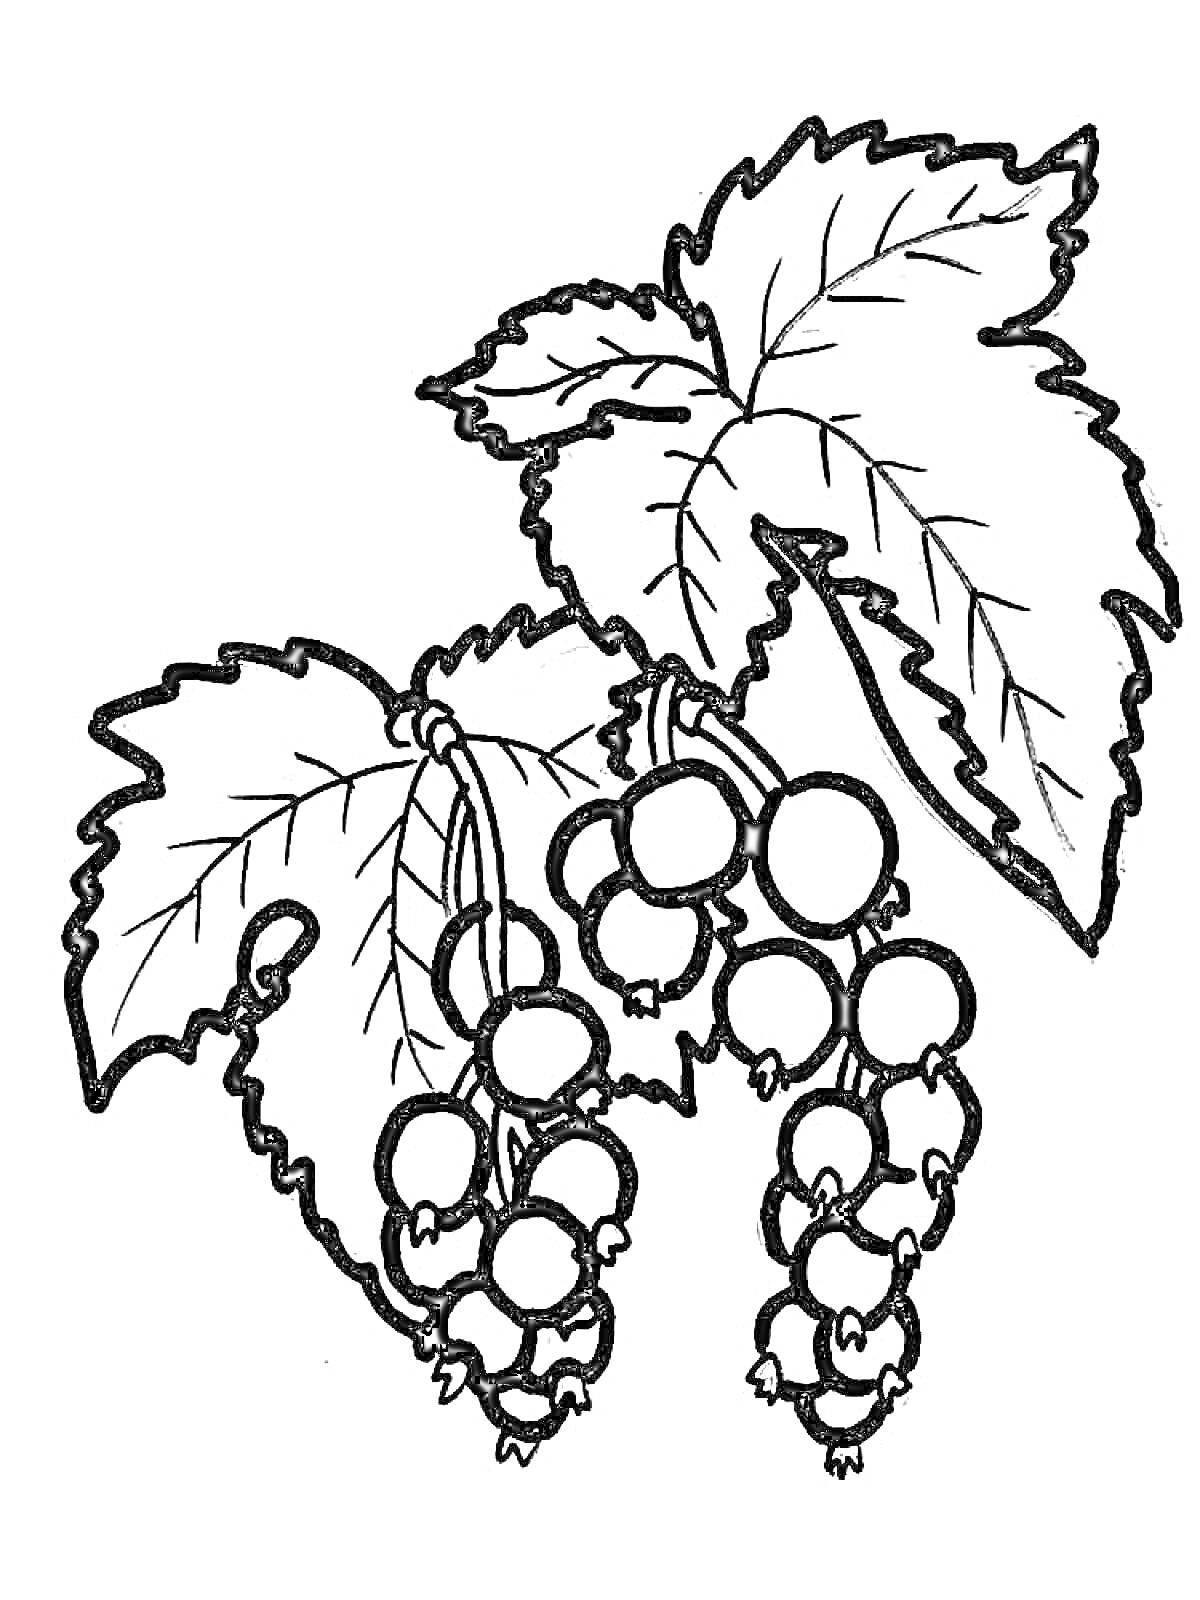 Смородина с листьями и ягодами